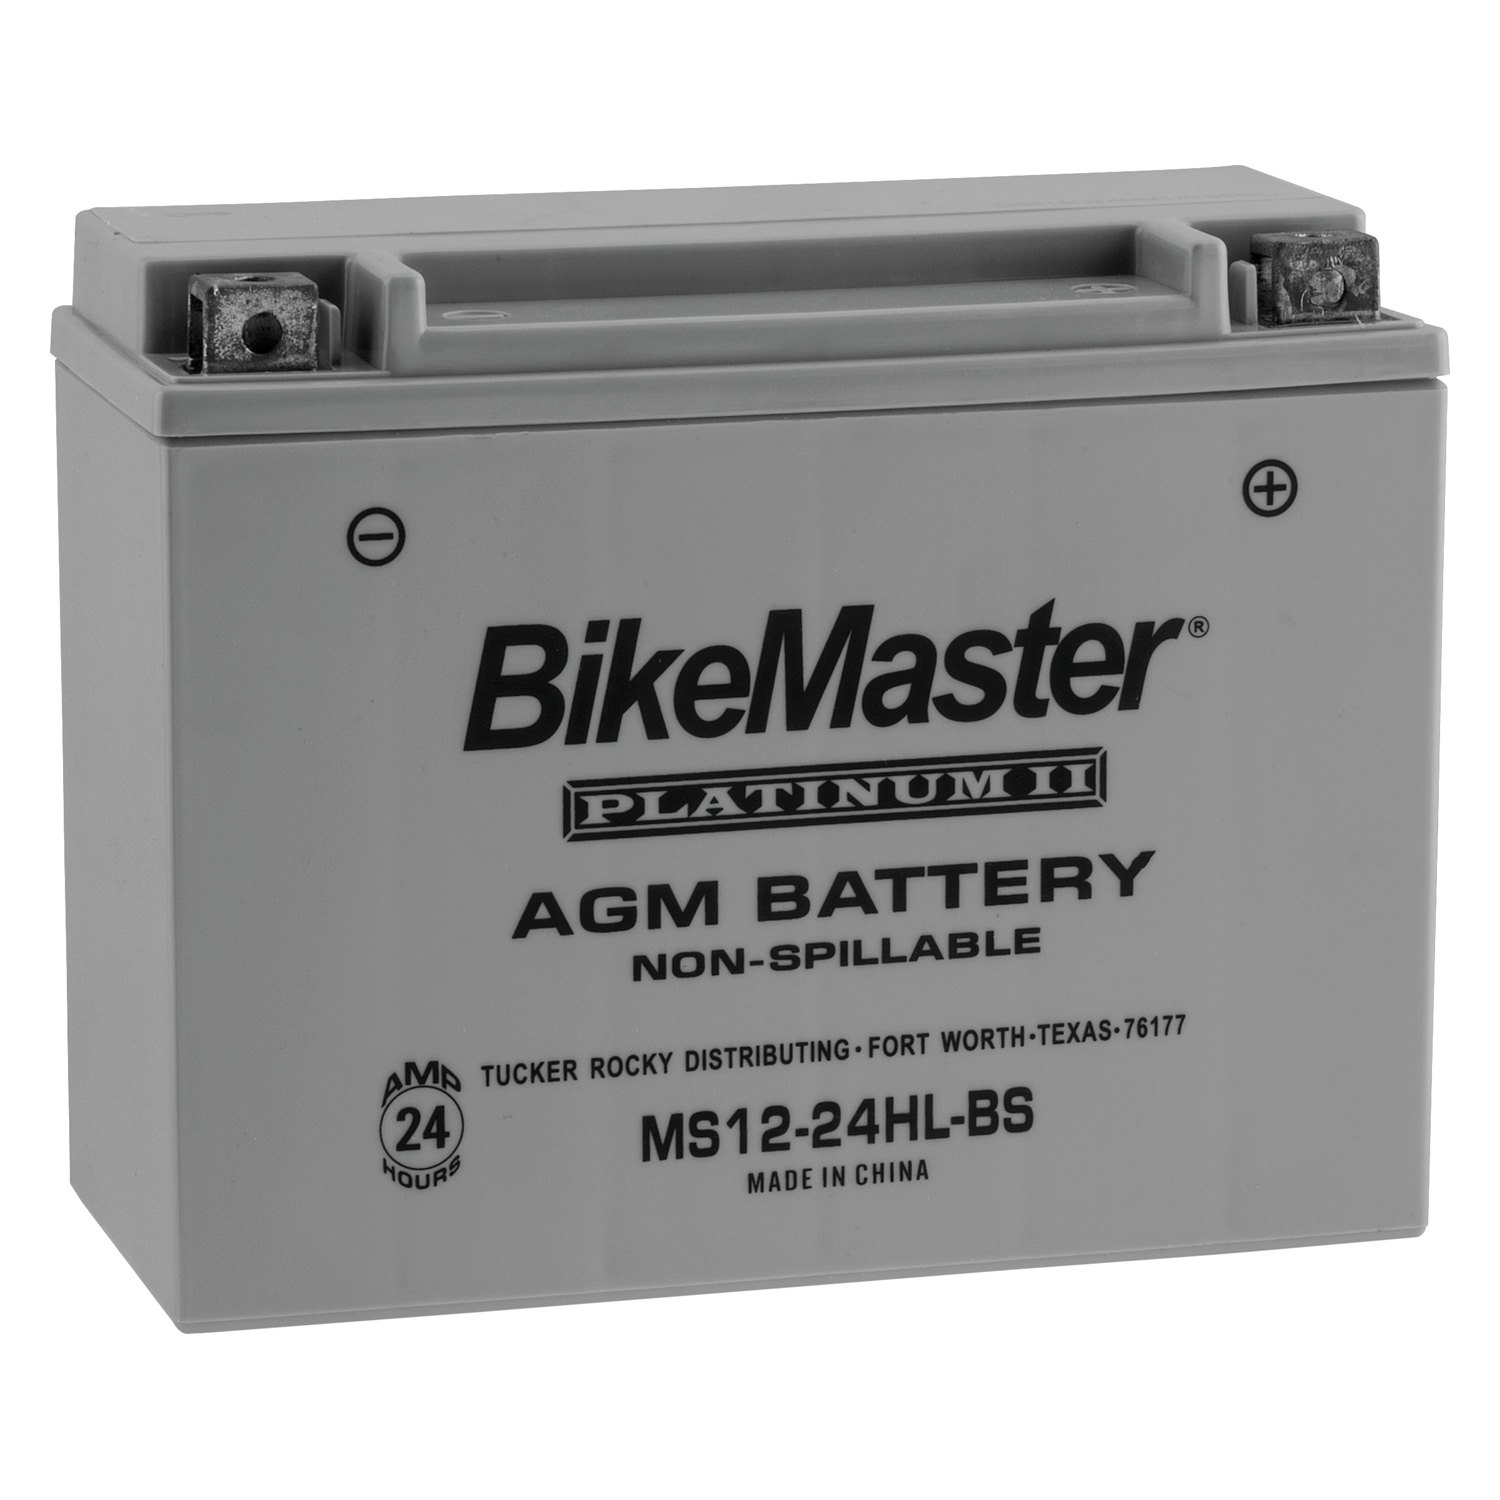 Battery 2.0. АКБ Platin AGM 12 V 95 AG 69616-MF. Platin AGM 95 аккумулятор. Non-Spillable аккумулятор. 2 ФКН 9 аккумулятор.